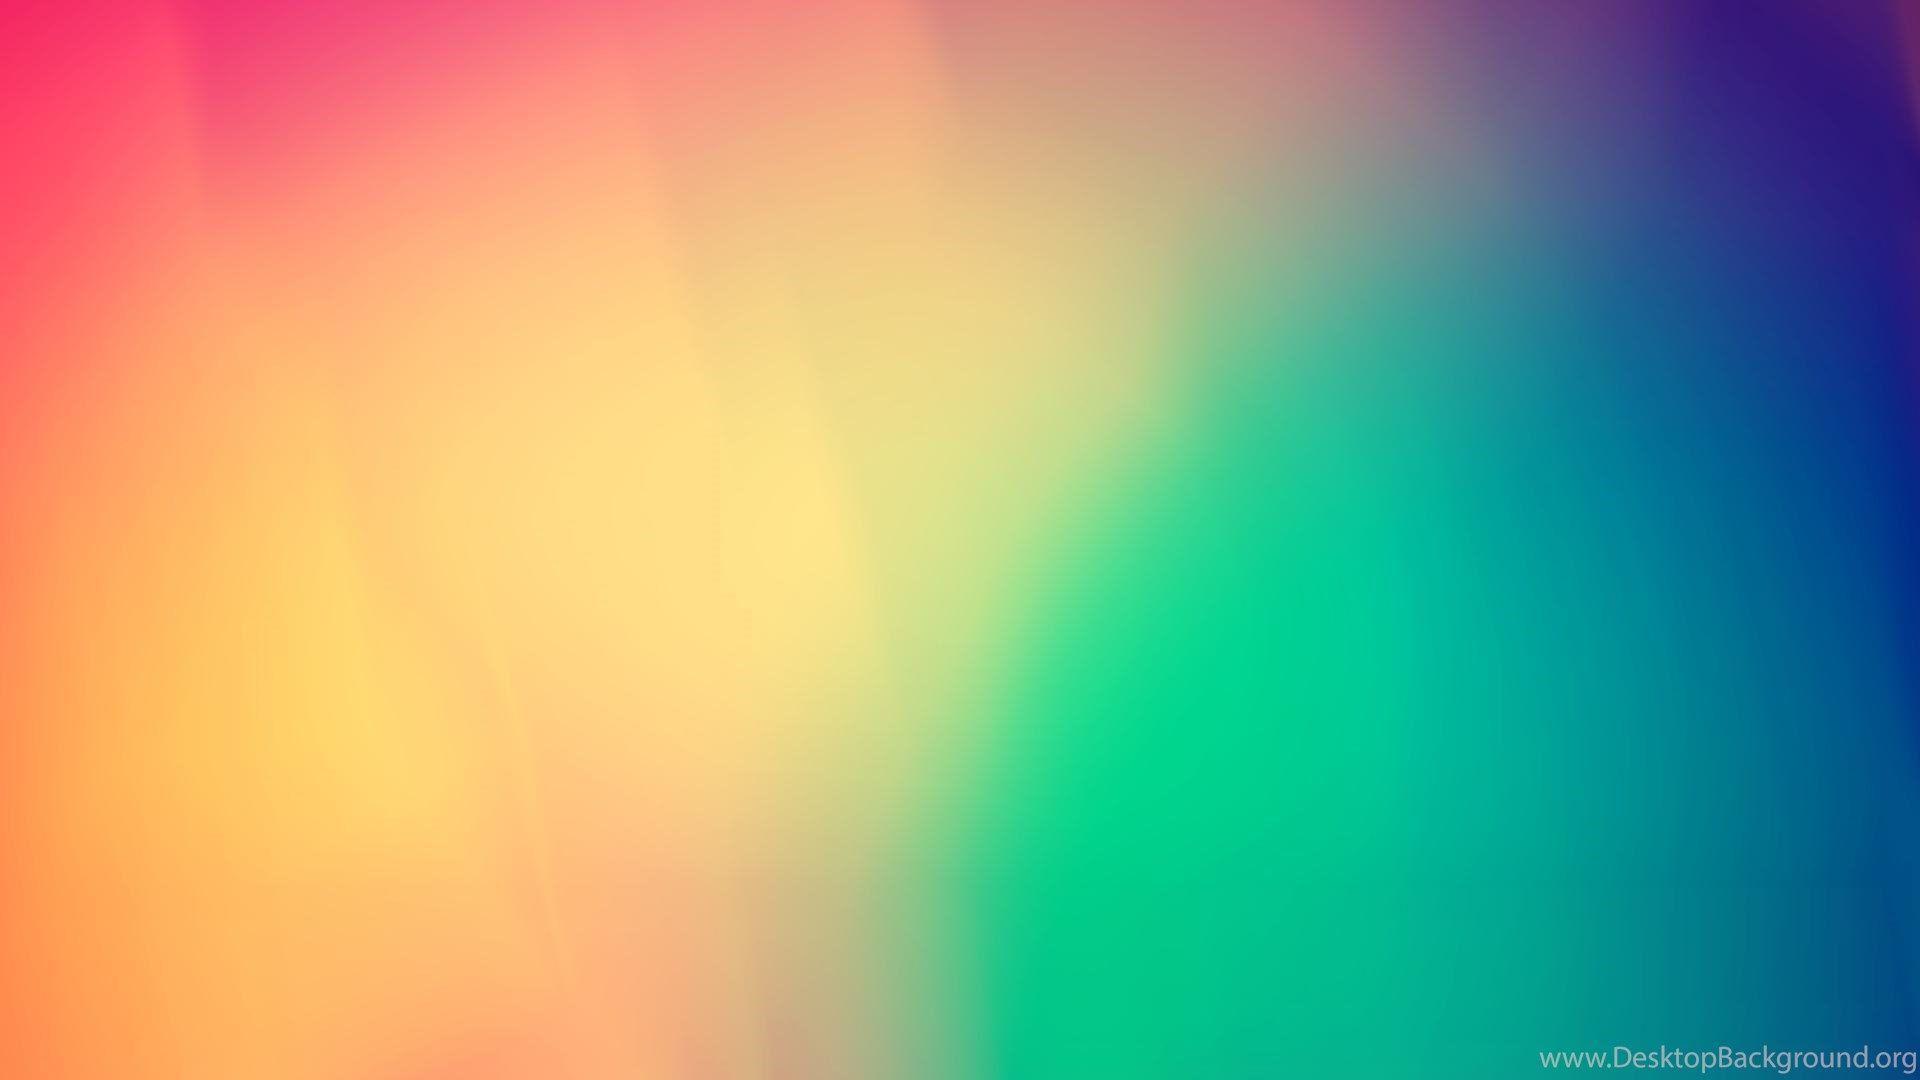 Background Plain Colors Wallpaper Zone Desktop Background